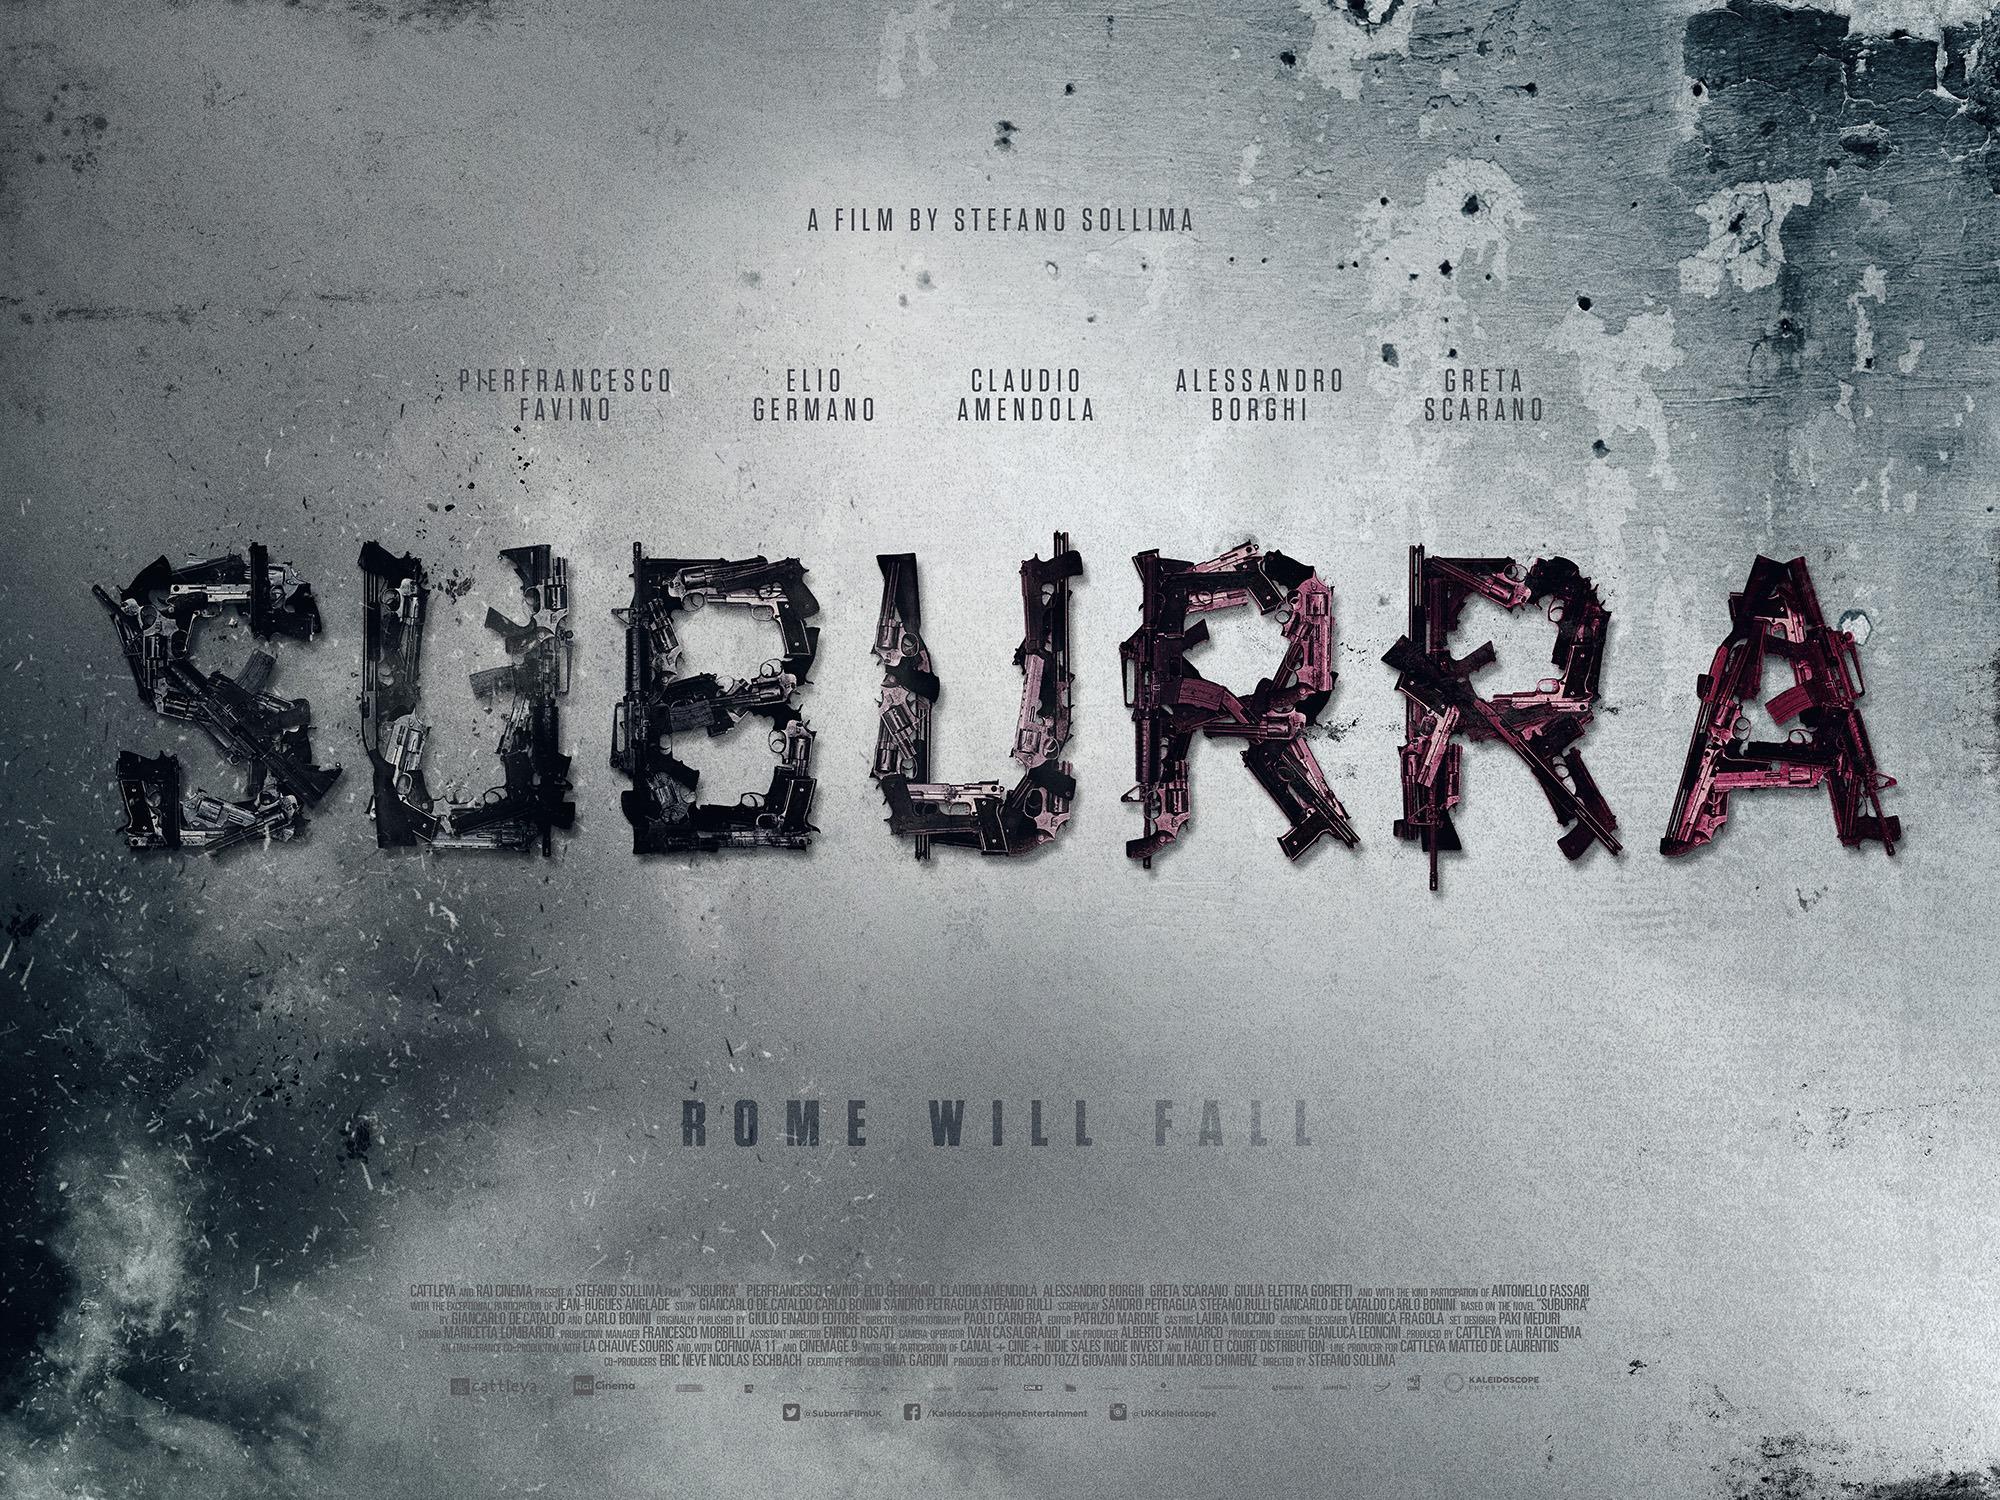 Постер фильма Suburra